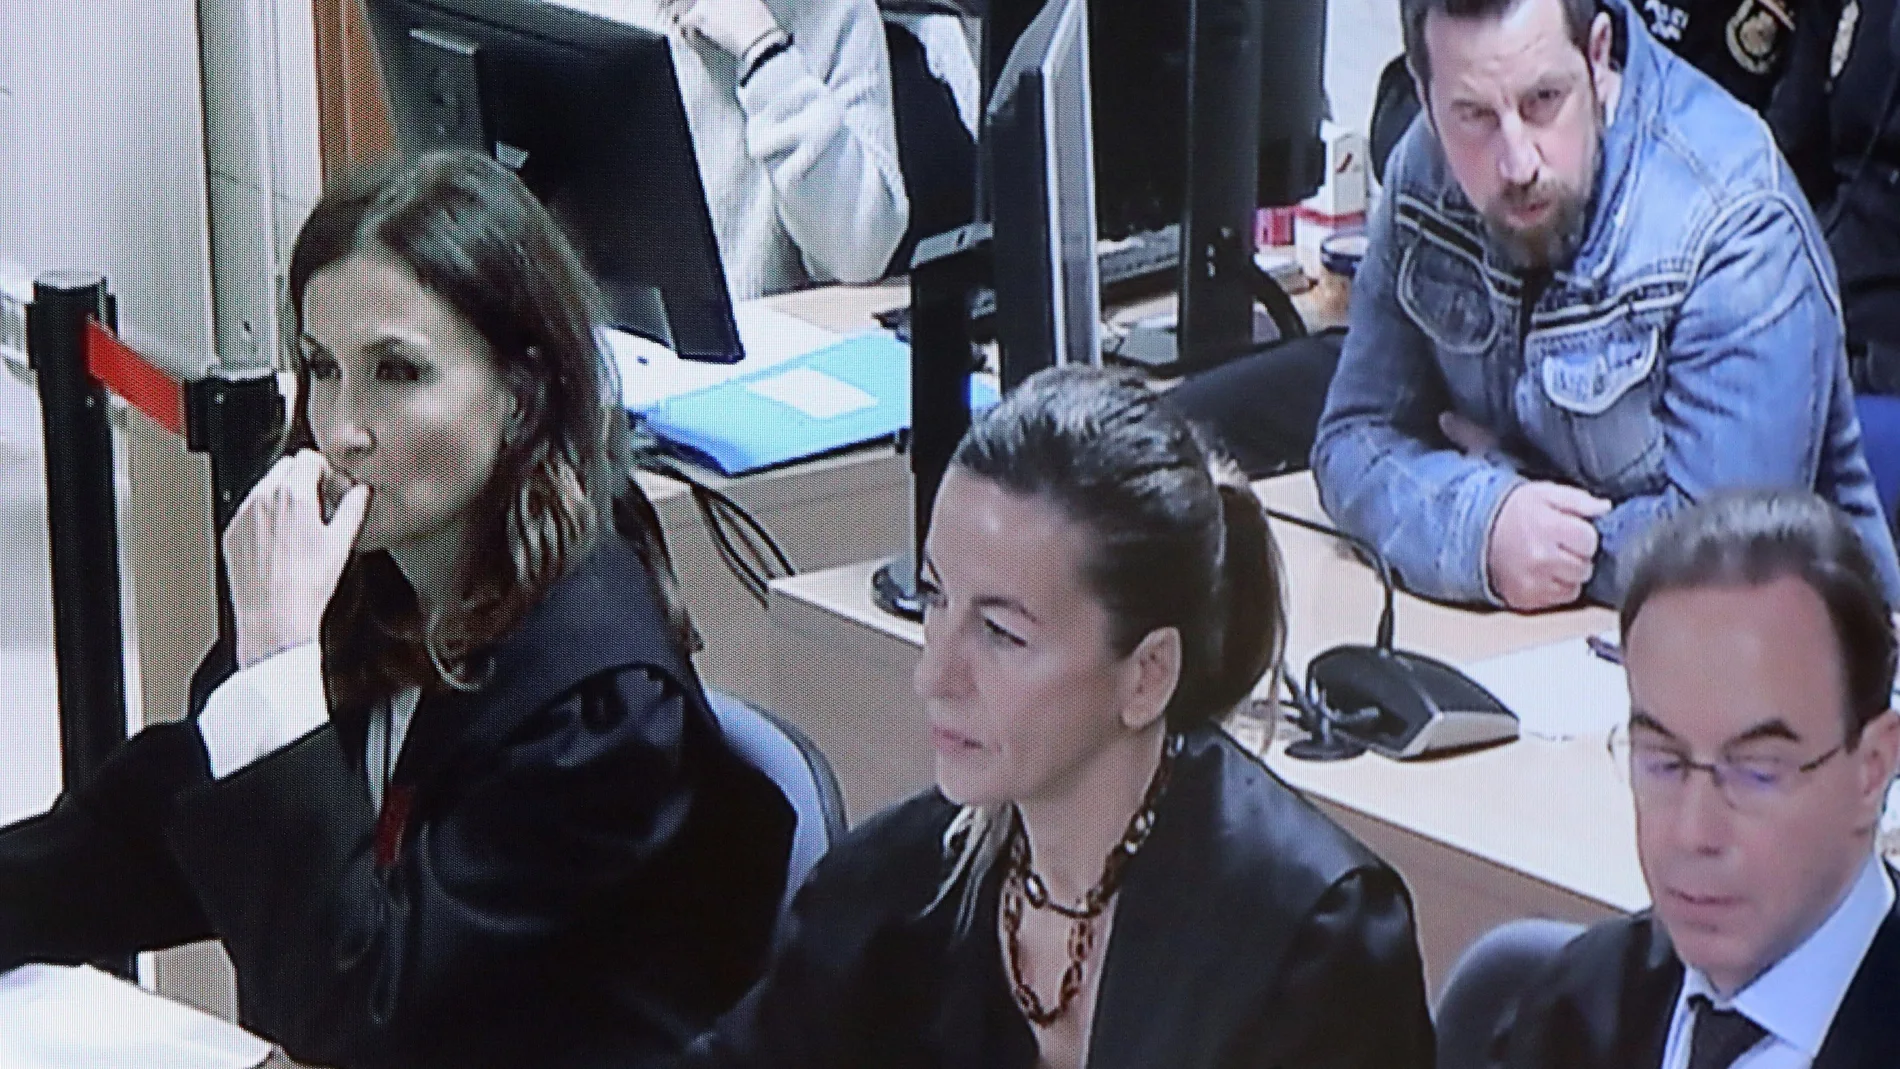 Fotografía del monitor de la sala de prensa de la Audiencia Provincial de A Coruña con José Enrique Abuin, alias "El Chicle", acusado por la muerte de Diana Quer, al inicio de la quinta jornada del juicio que se celebra en Santiago de compostela